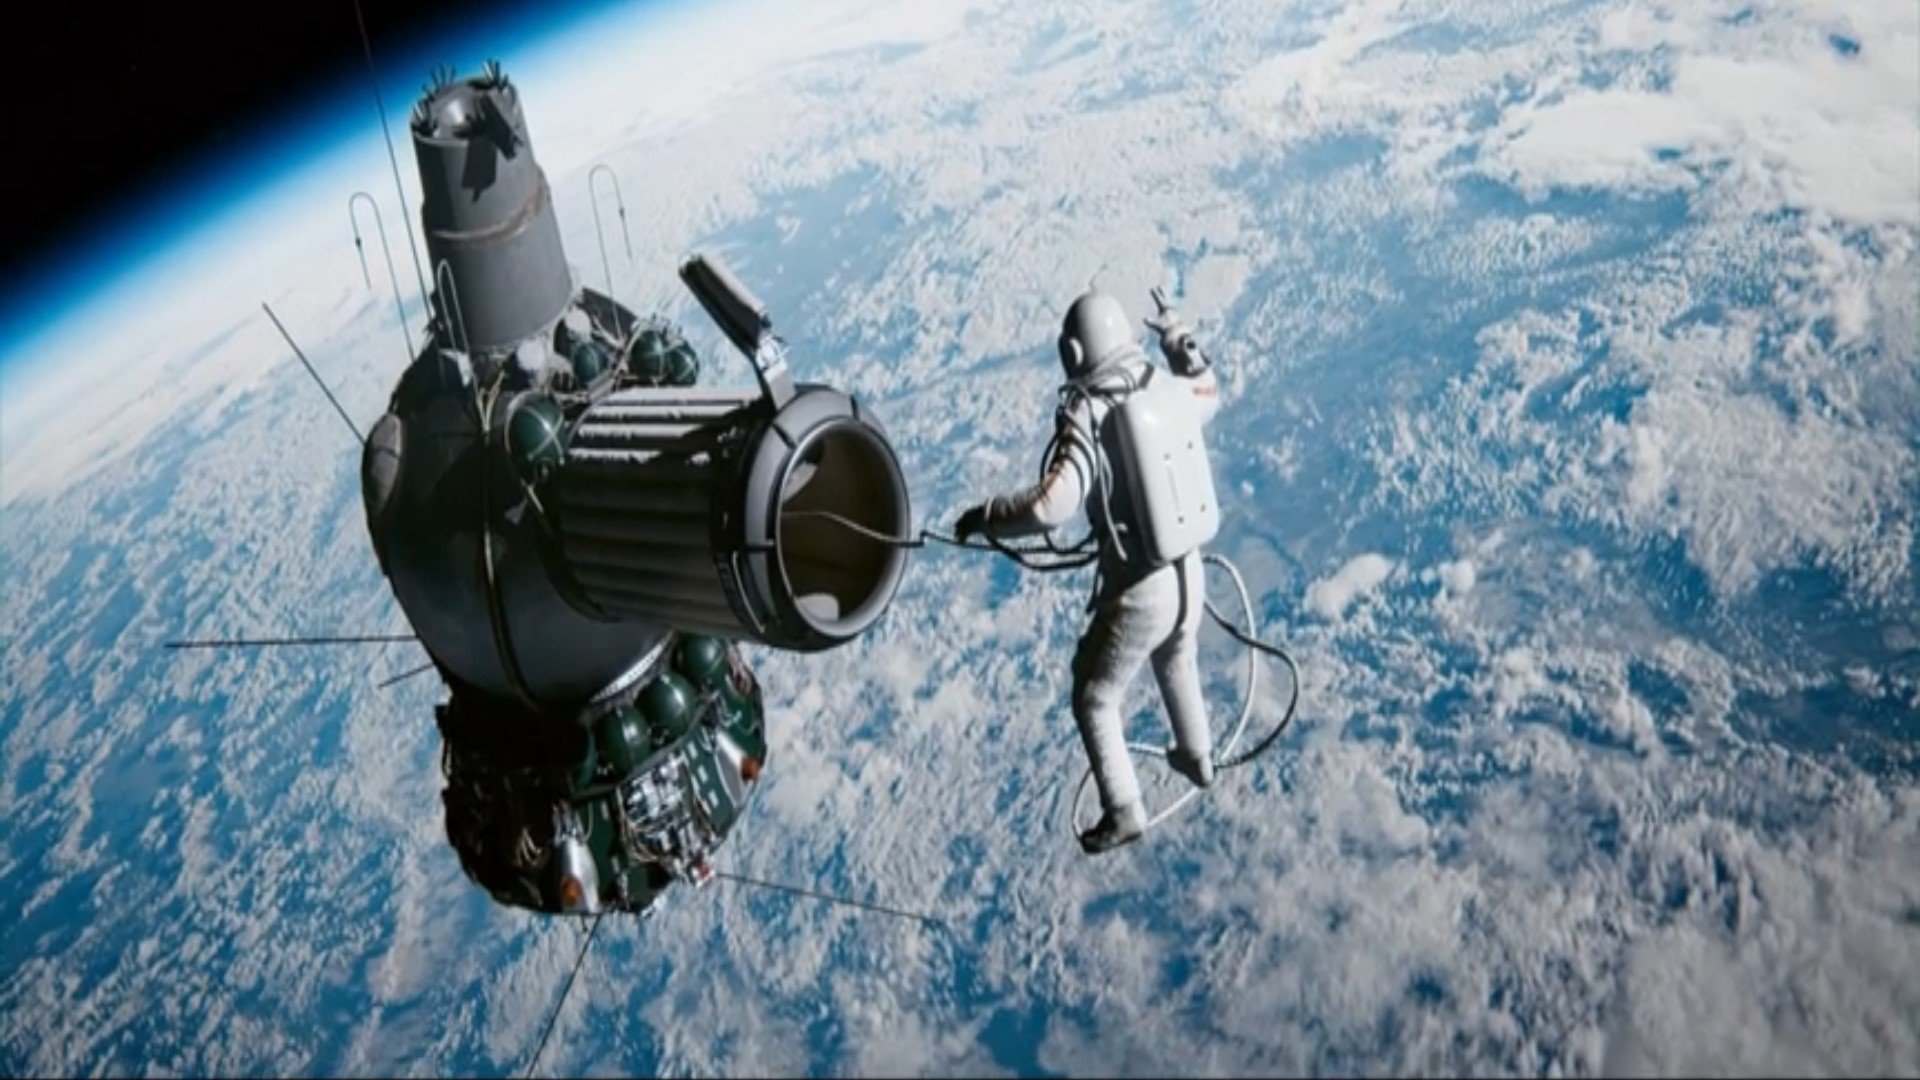 Леонов на каком корабле. Космический корабль Восход 2 Леонова. Первый выход в открытый космос Леонова.